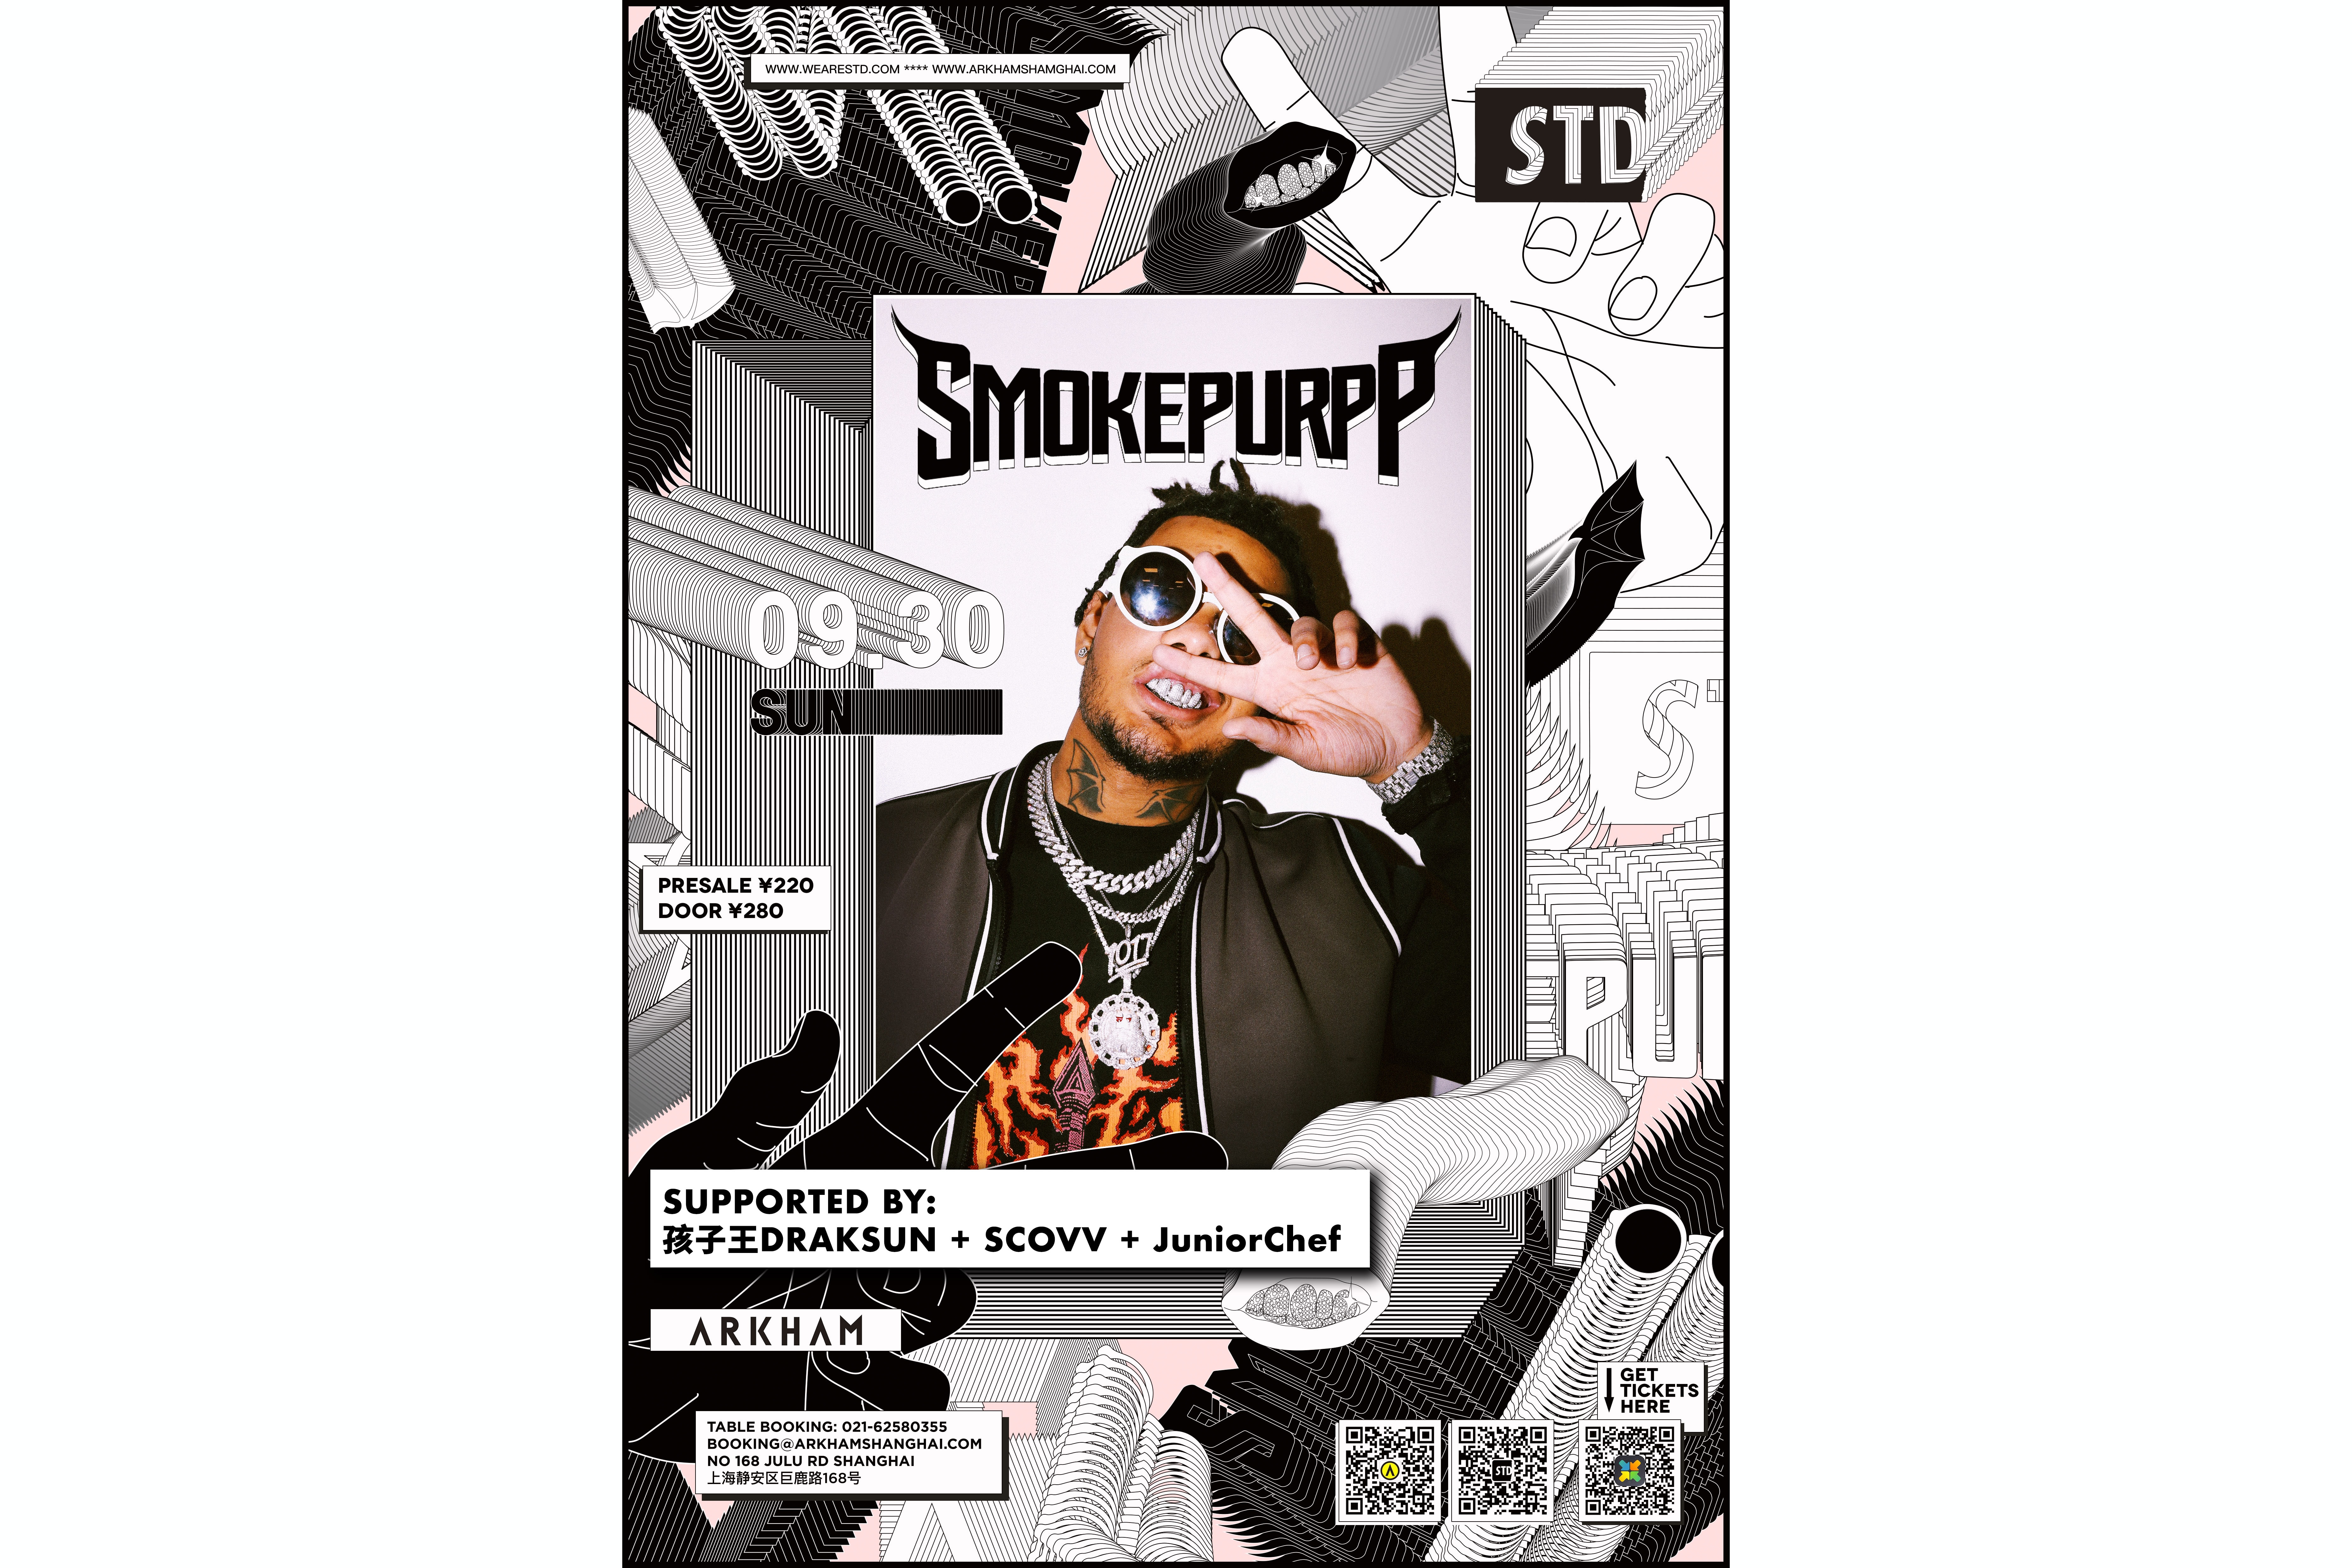 说唱新星 Smokepurpp 即将于上海展开演出